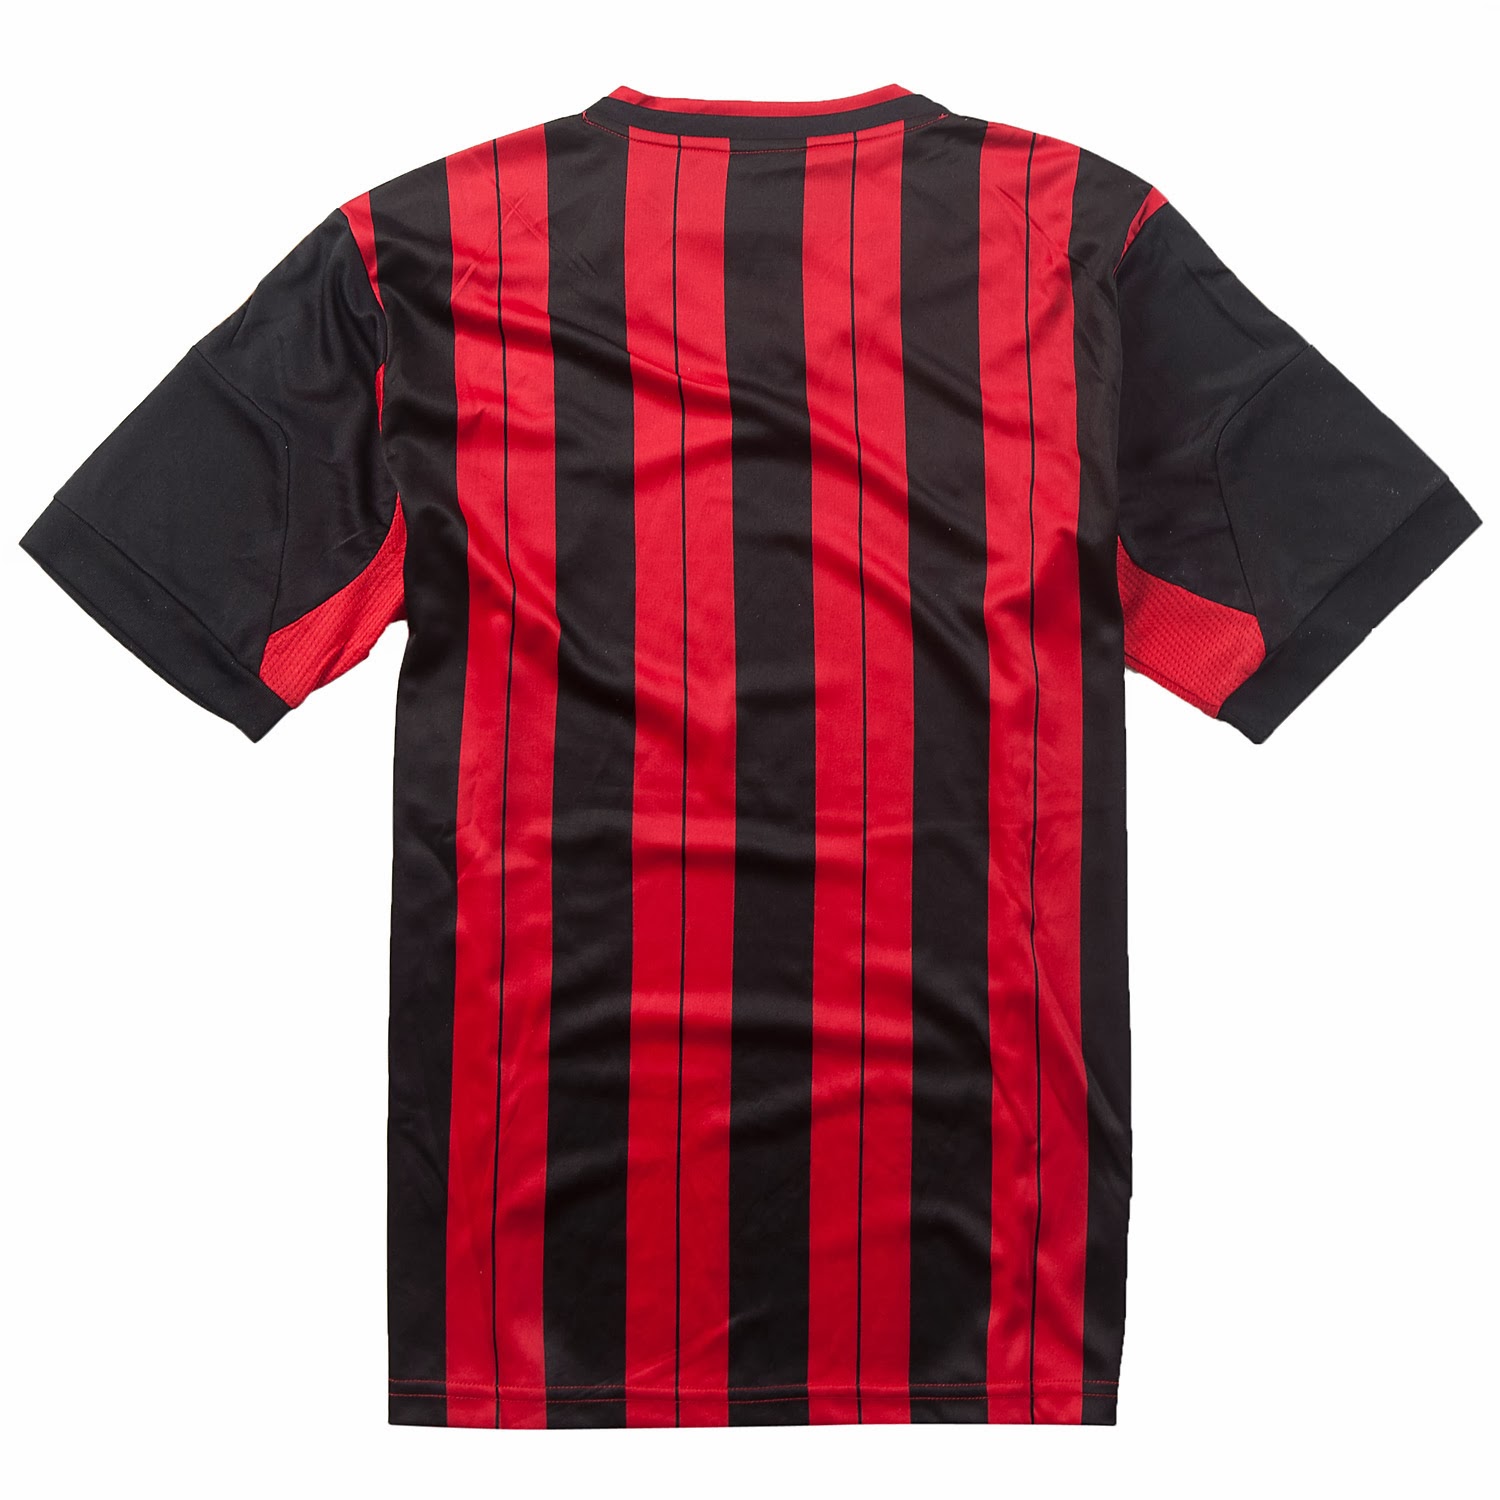 Equipaciones de futbol baratas 2015 online: nueva camisetas de futbol ...